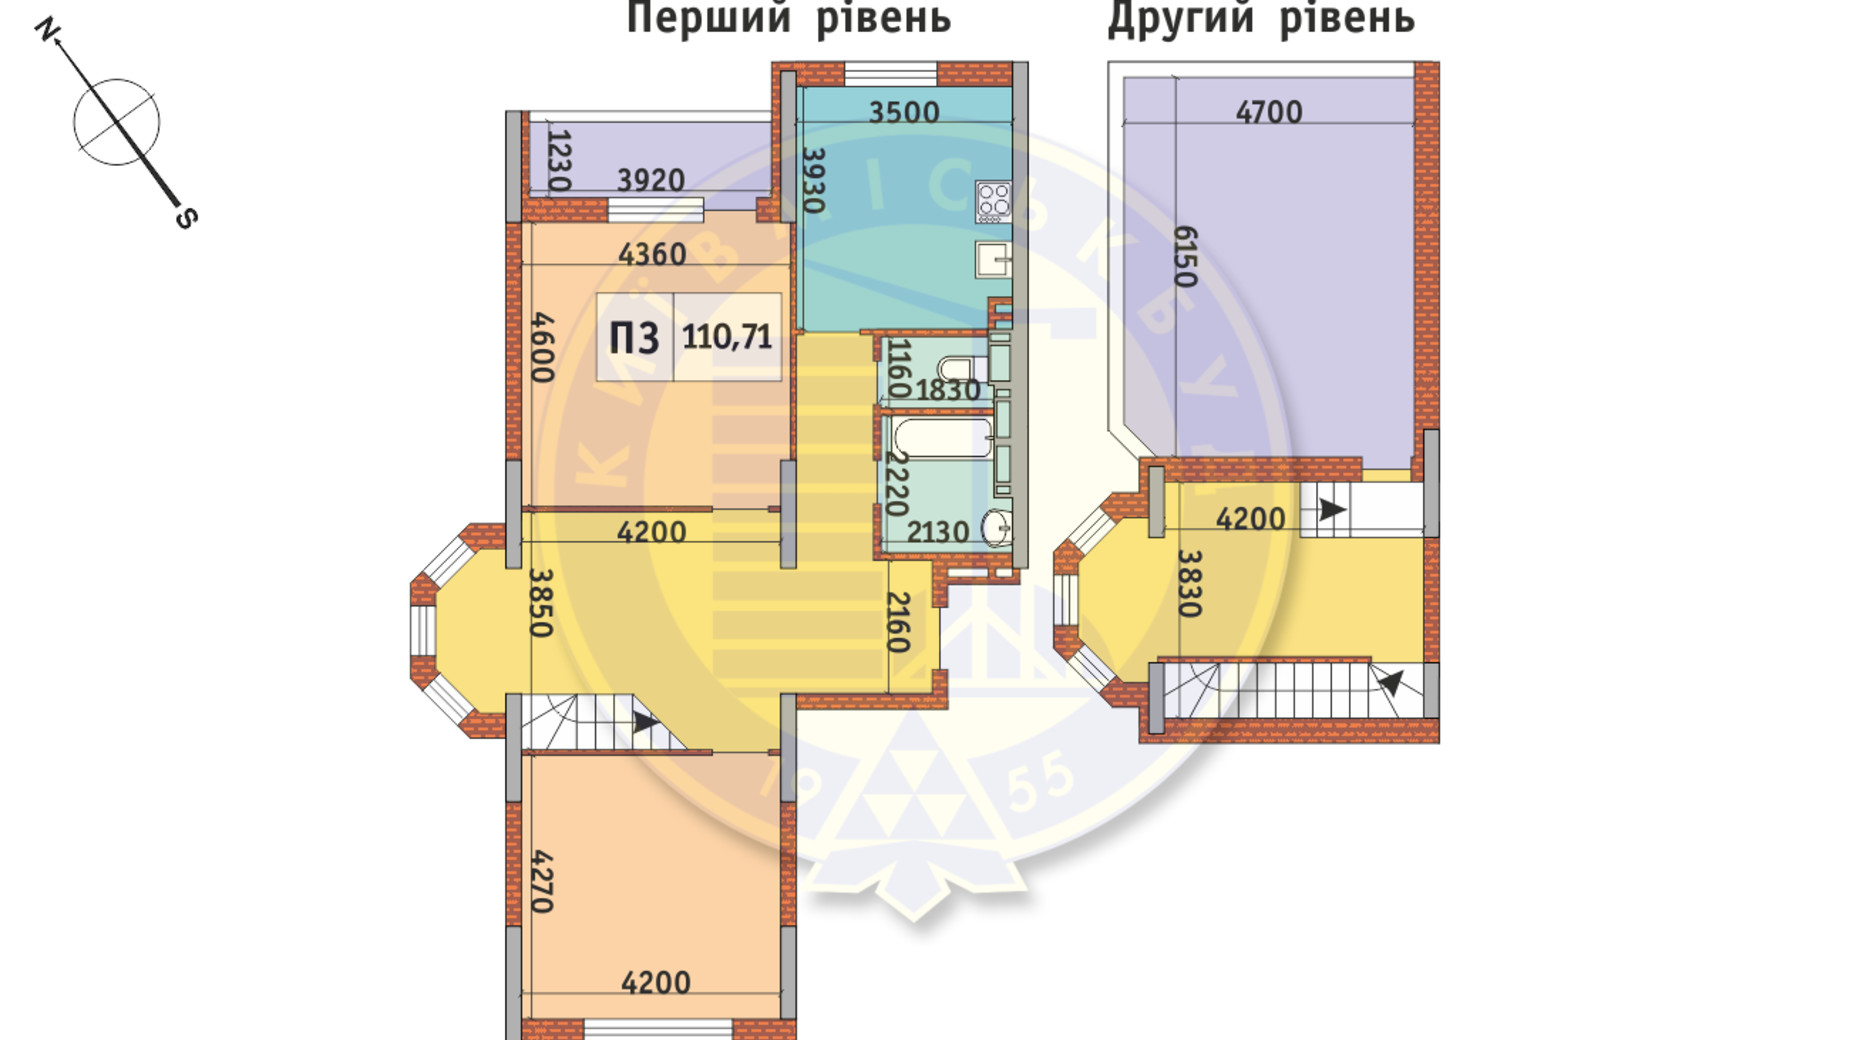 Планування багато­рівневої квартири в ЖК Академ Парк 110.71 м², фото 668956